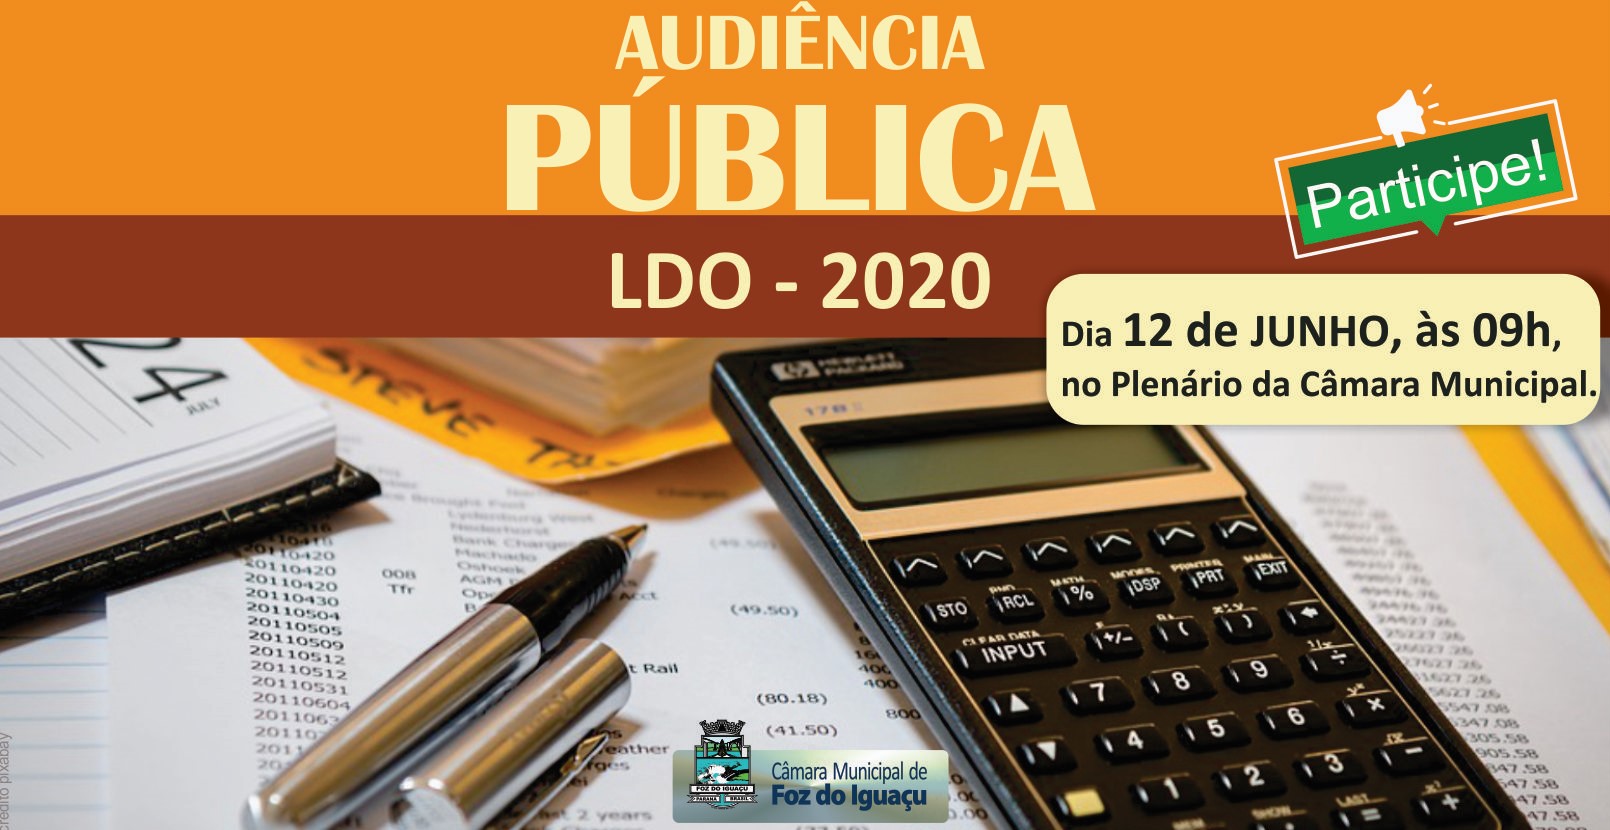 Audiência Pública LDO - 2020